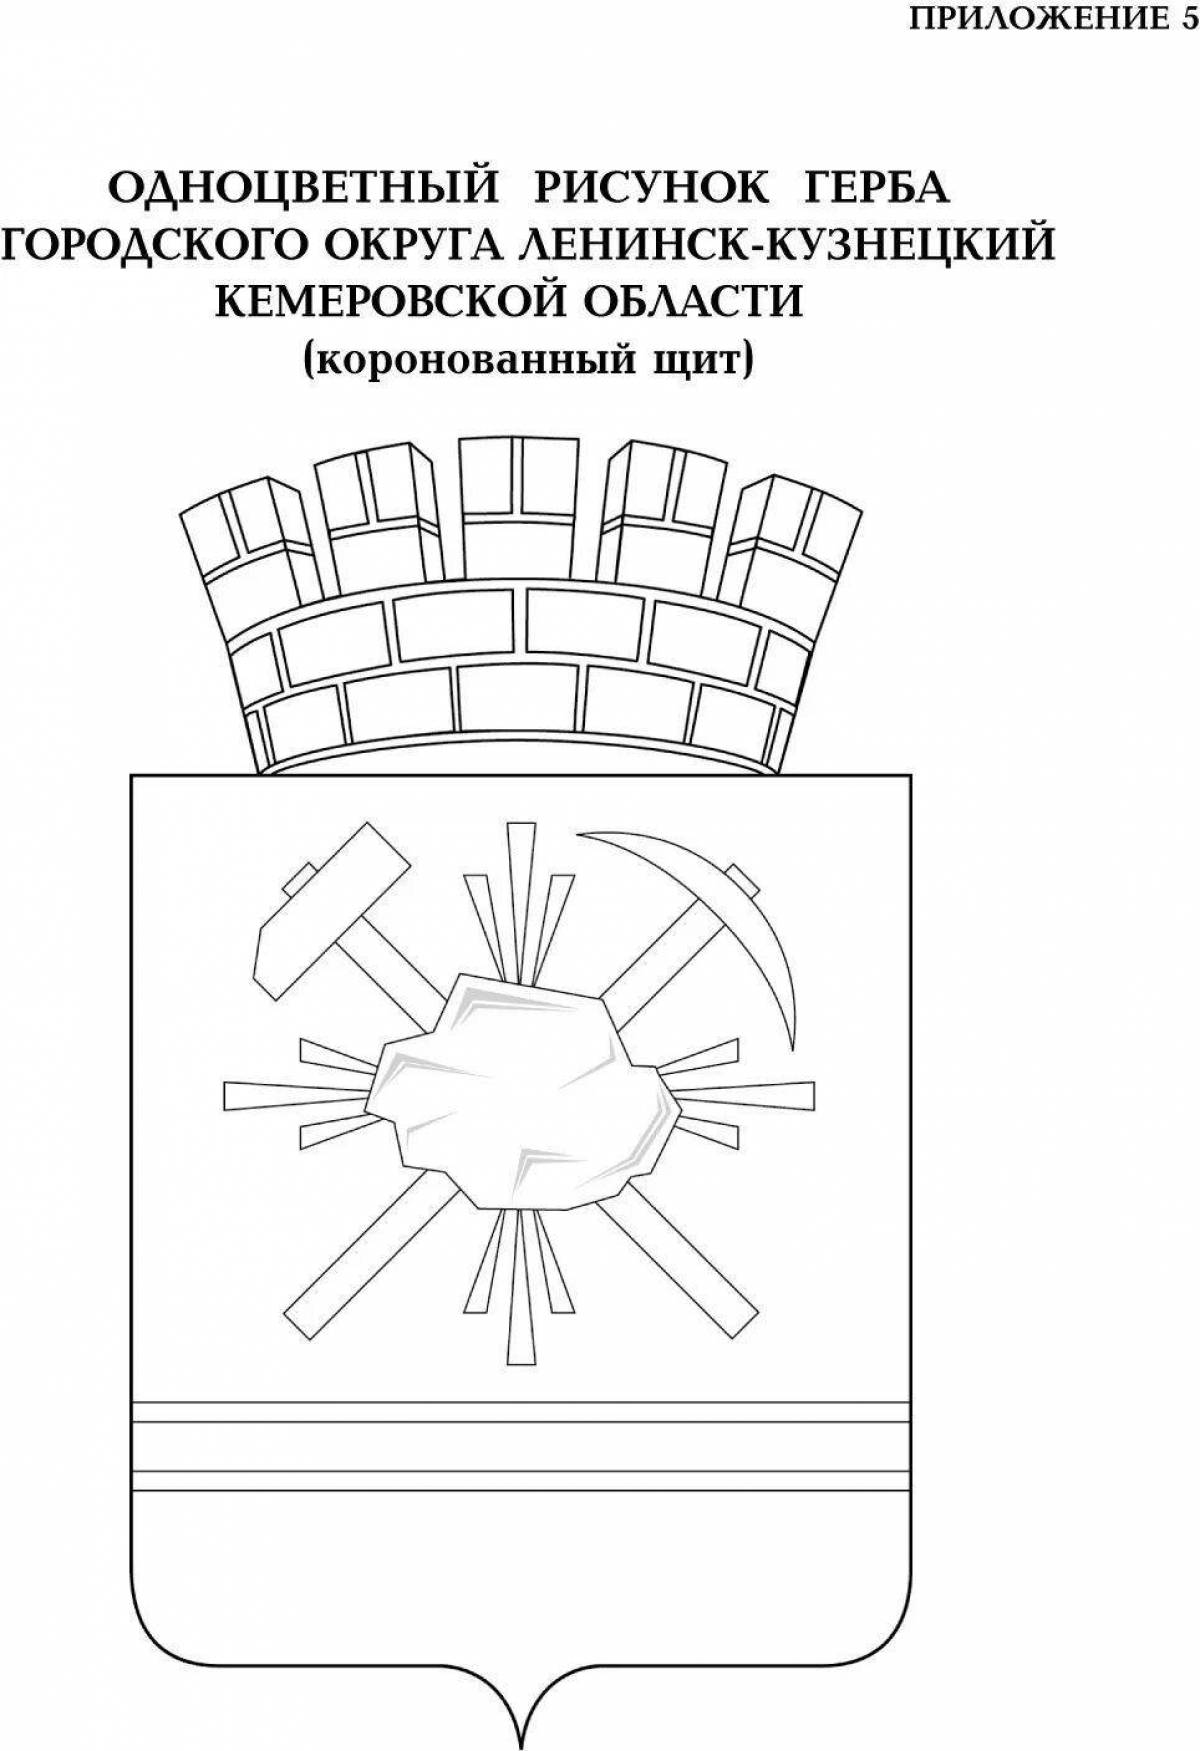 Coat of arms of Kuzbass #5